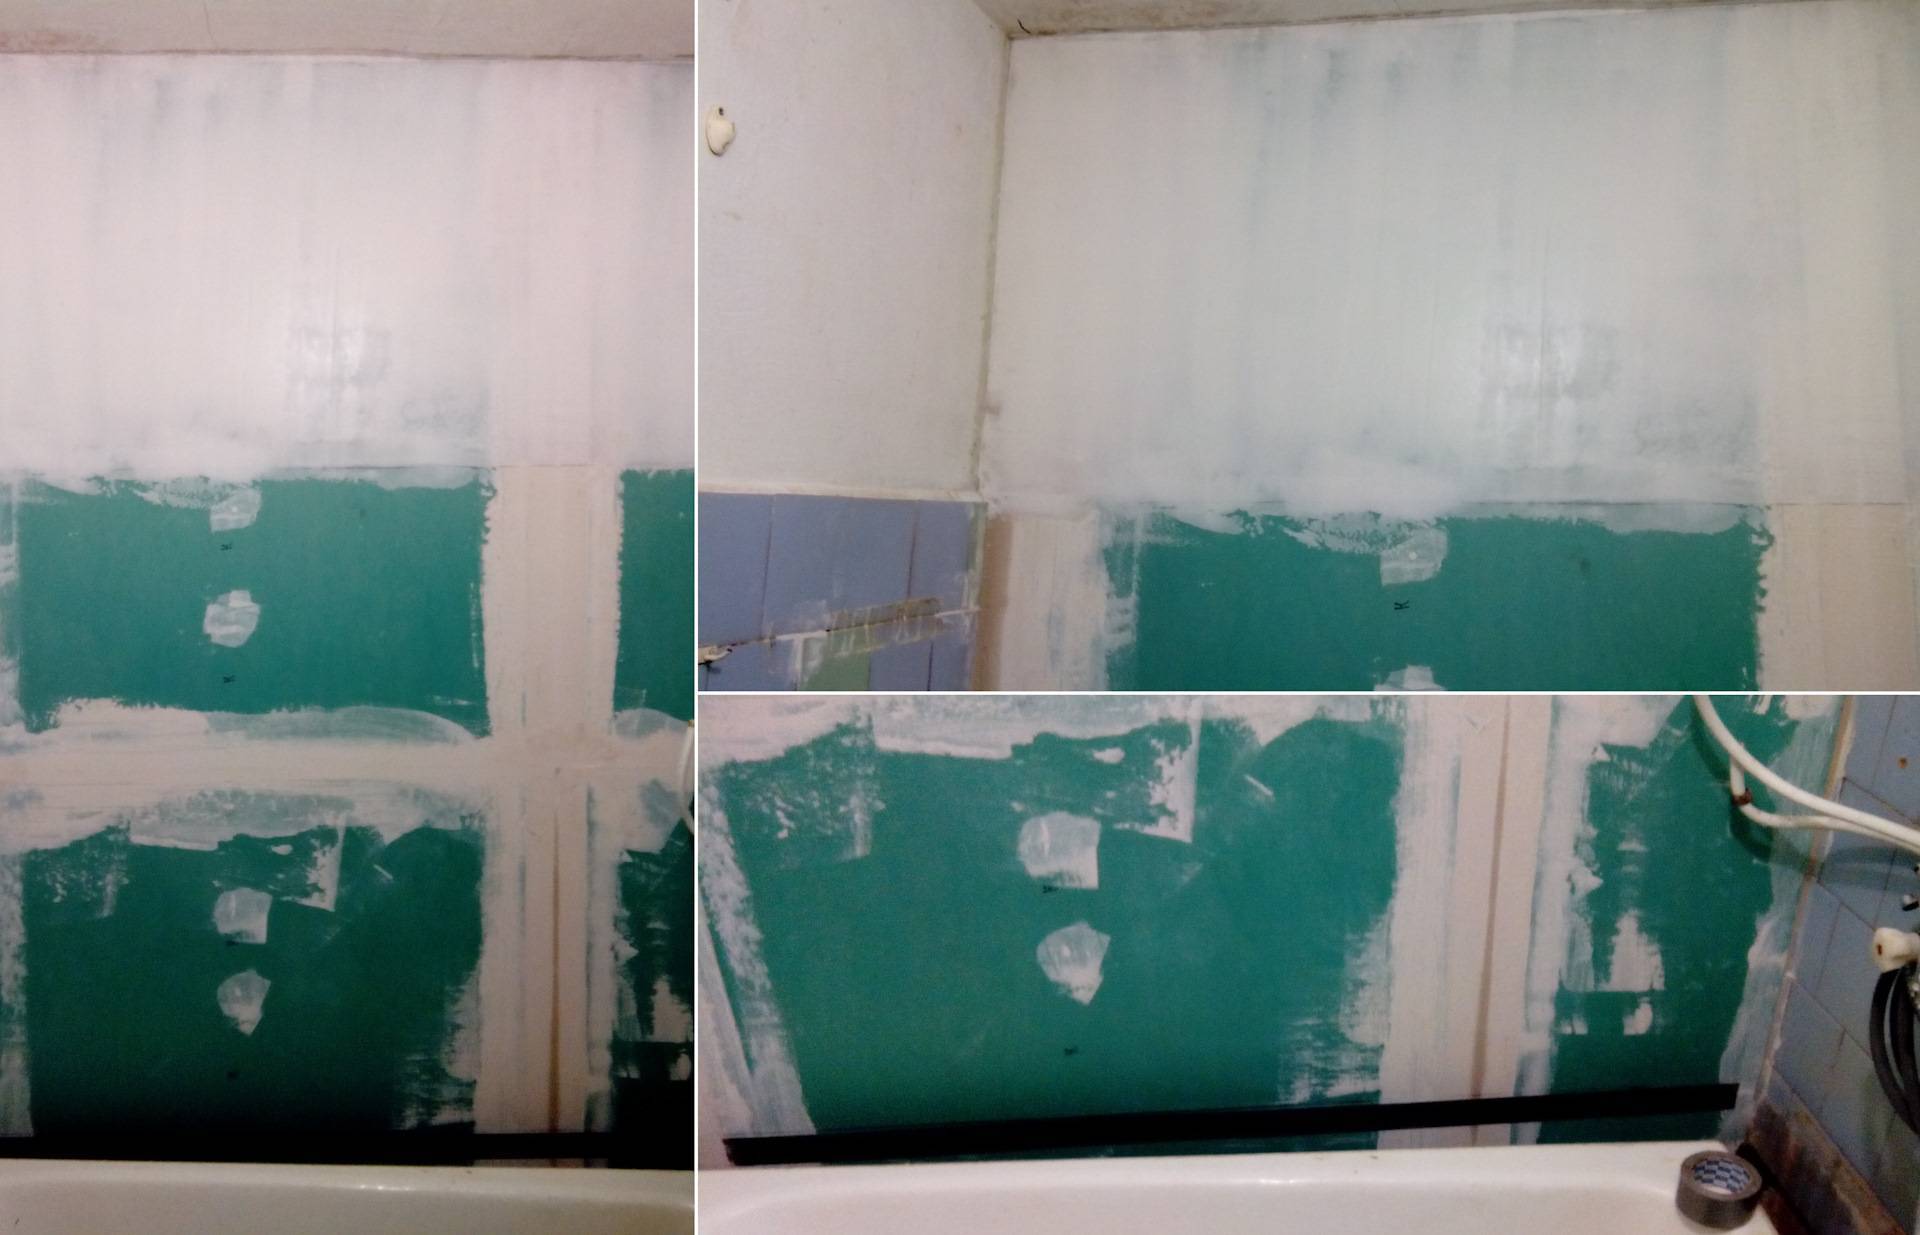 Чем отделать стены в ванной комнате кроме плитки: 9 вариантов отделки